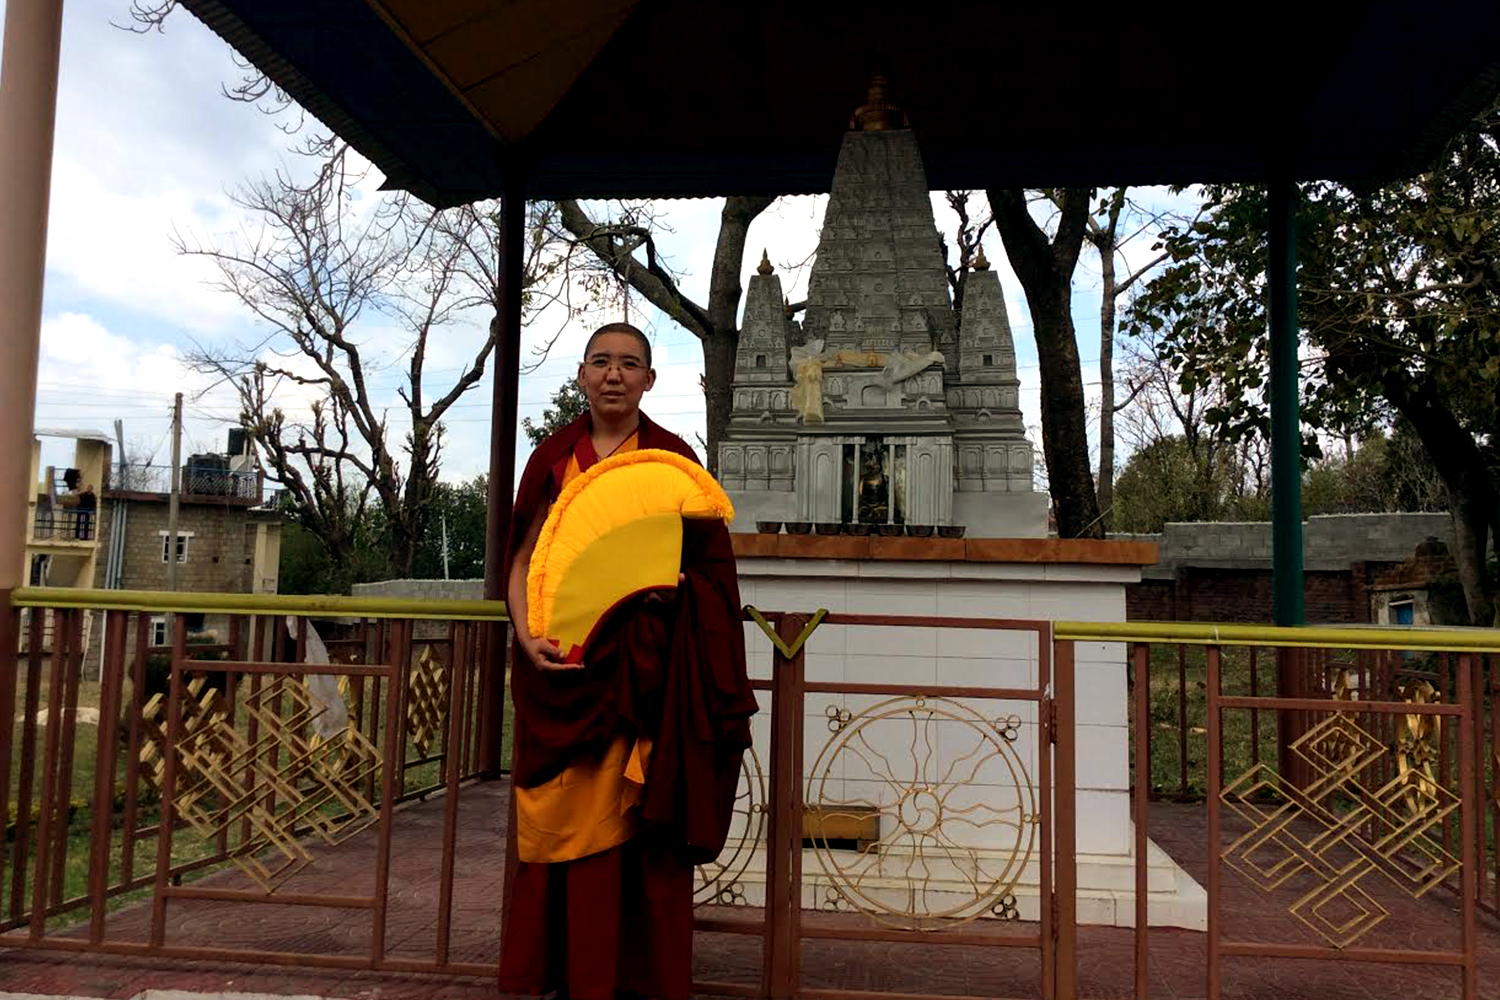 Geshema Lhamo Gurung